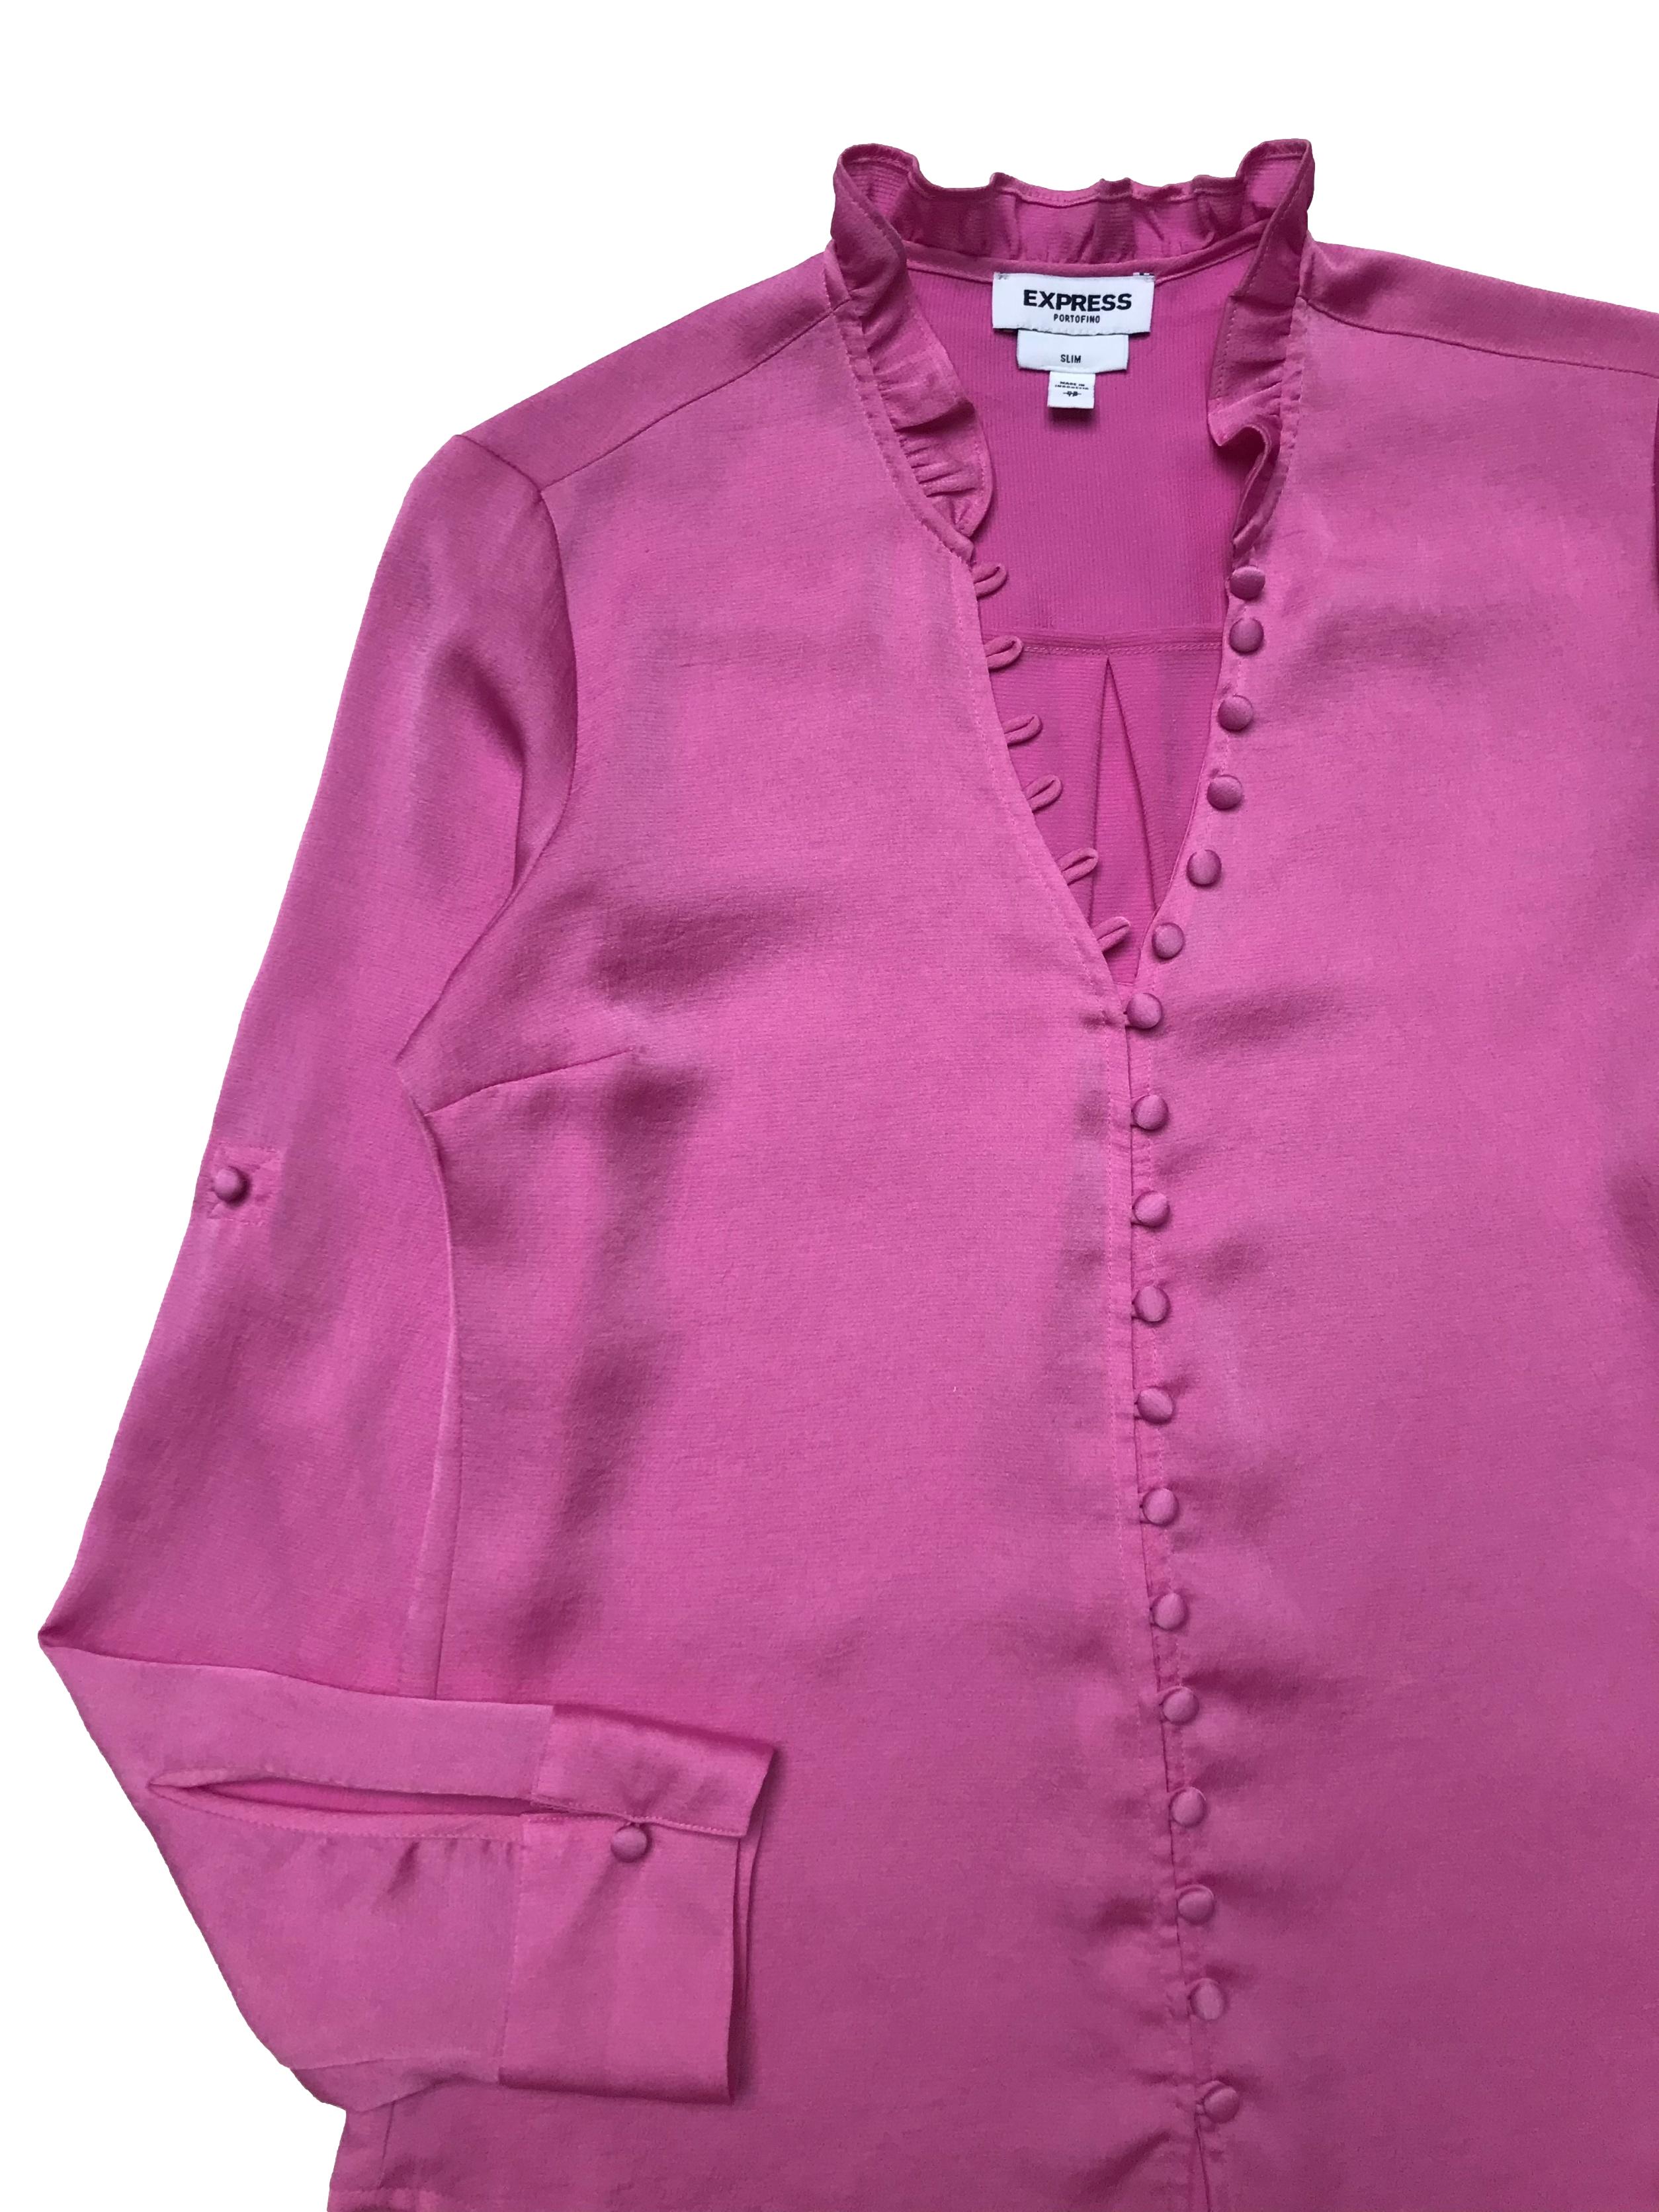 Blusa Express rosa chicle con fila de botones forrados y bobo en el cuello, mangas regulables con botón, es suelta. Busto 96cm Largo 60cm